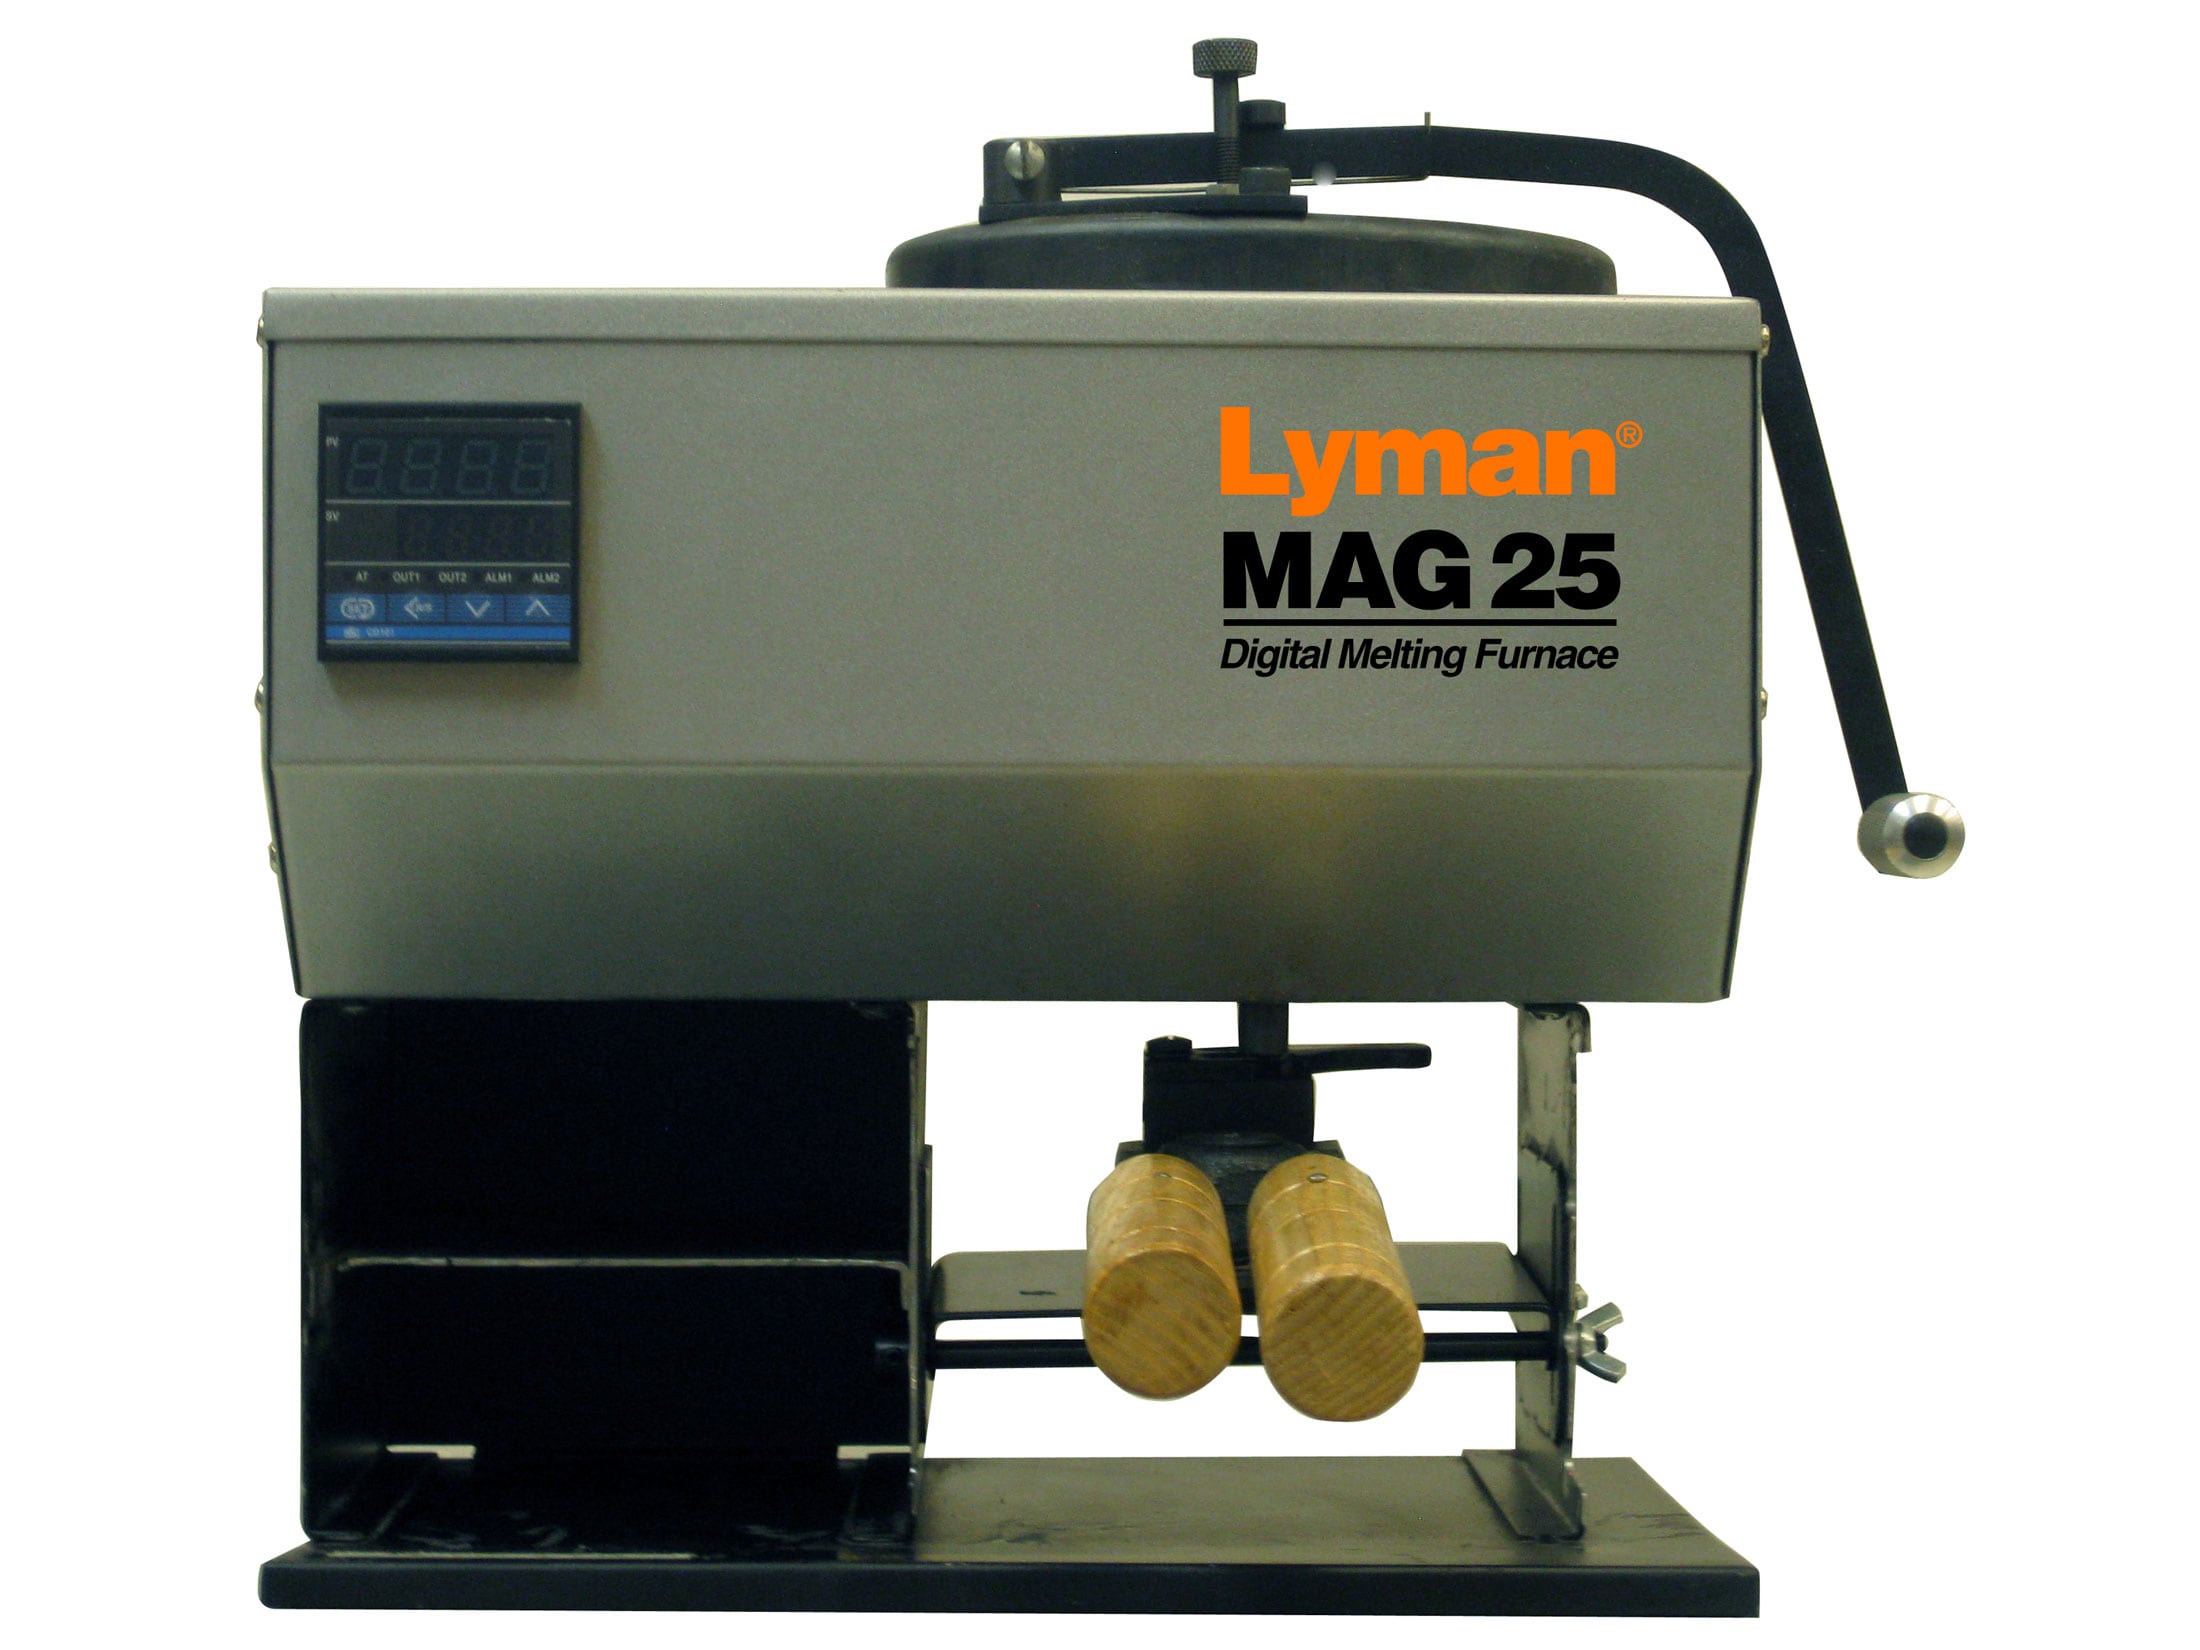 Lyman Cast Iron Lead Pot With Pour Spout 10 P… 2867795 Other - Arnzen Arms